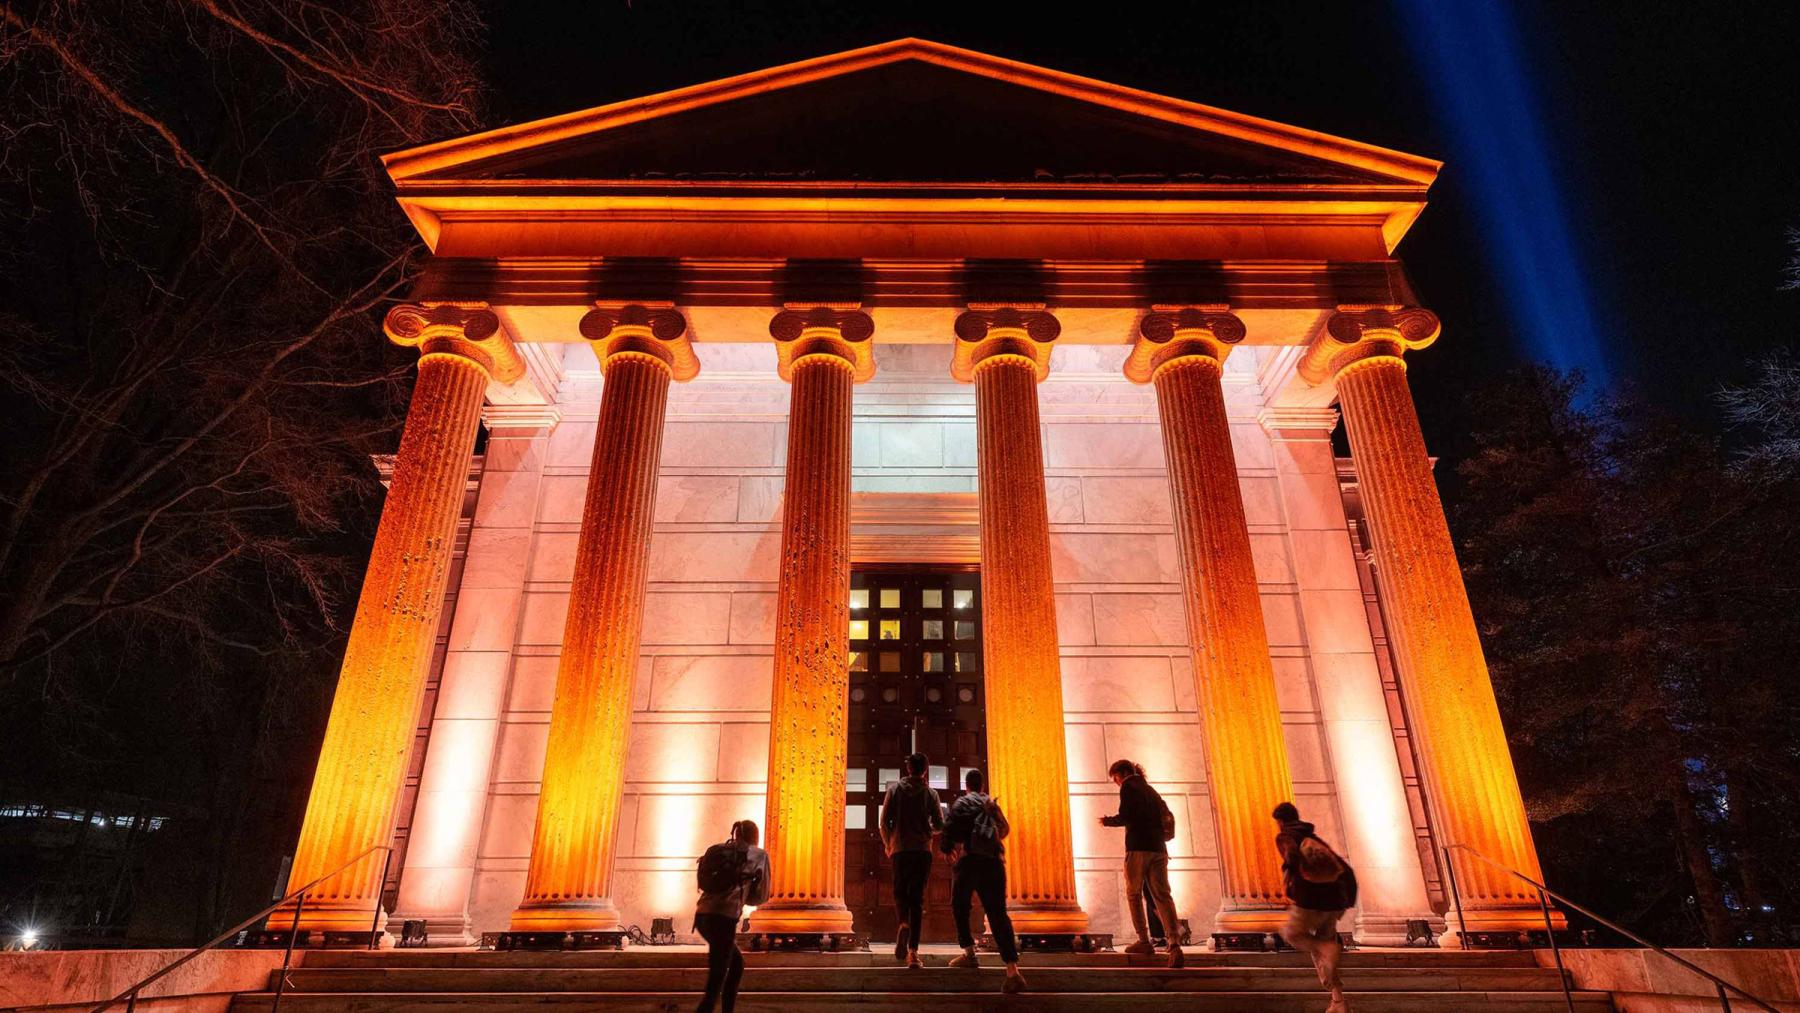 Whig Hall, lit orange at night